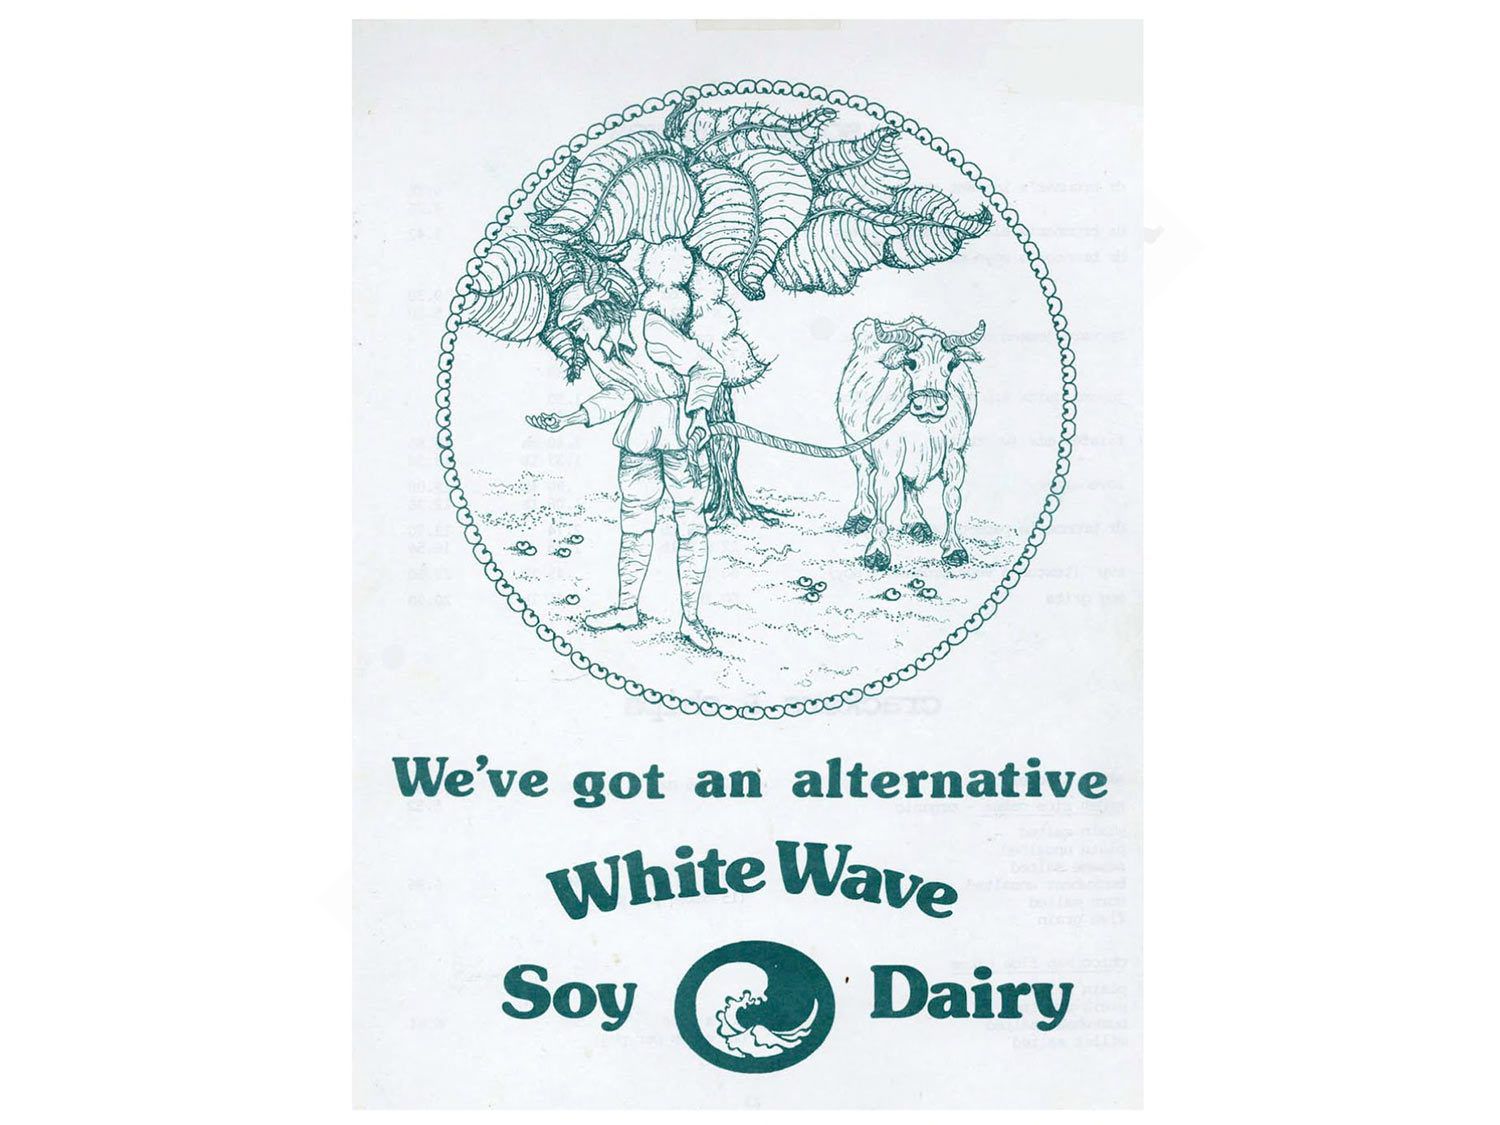 白浪豆浆的复古广告，以一头古老的奶牛为特色，宣称，